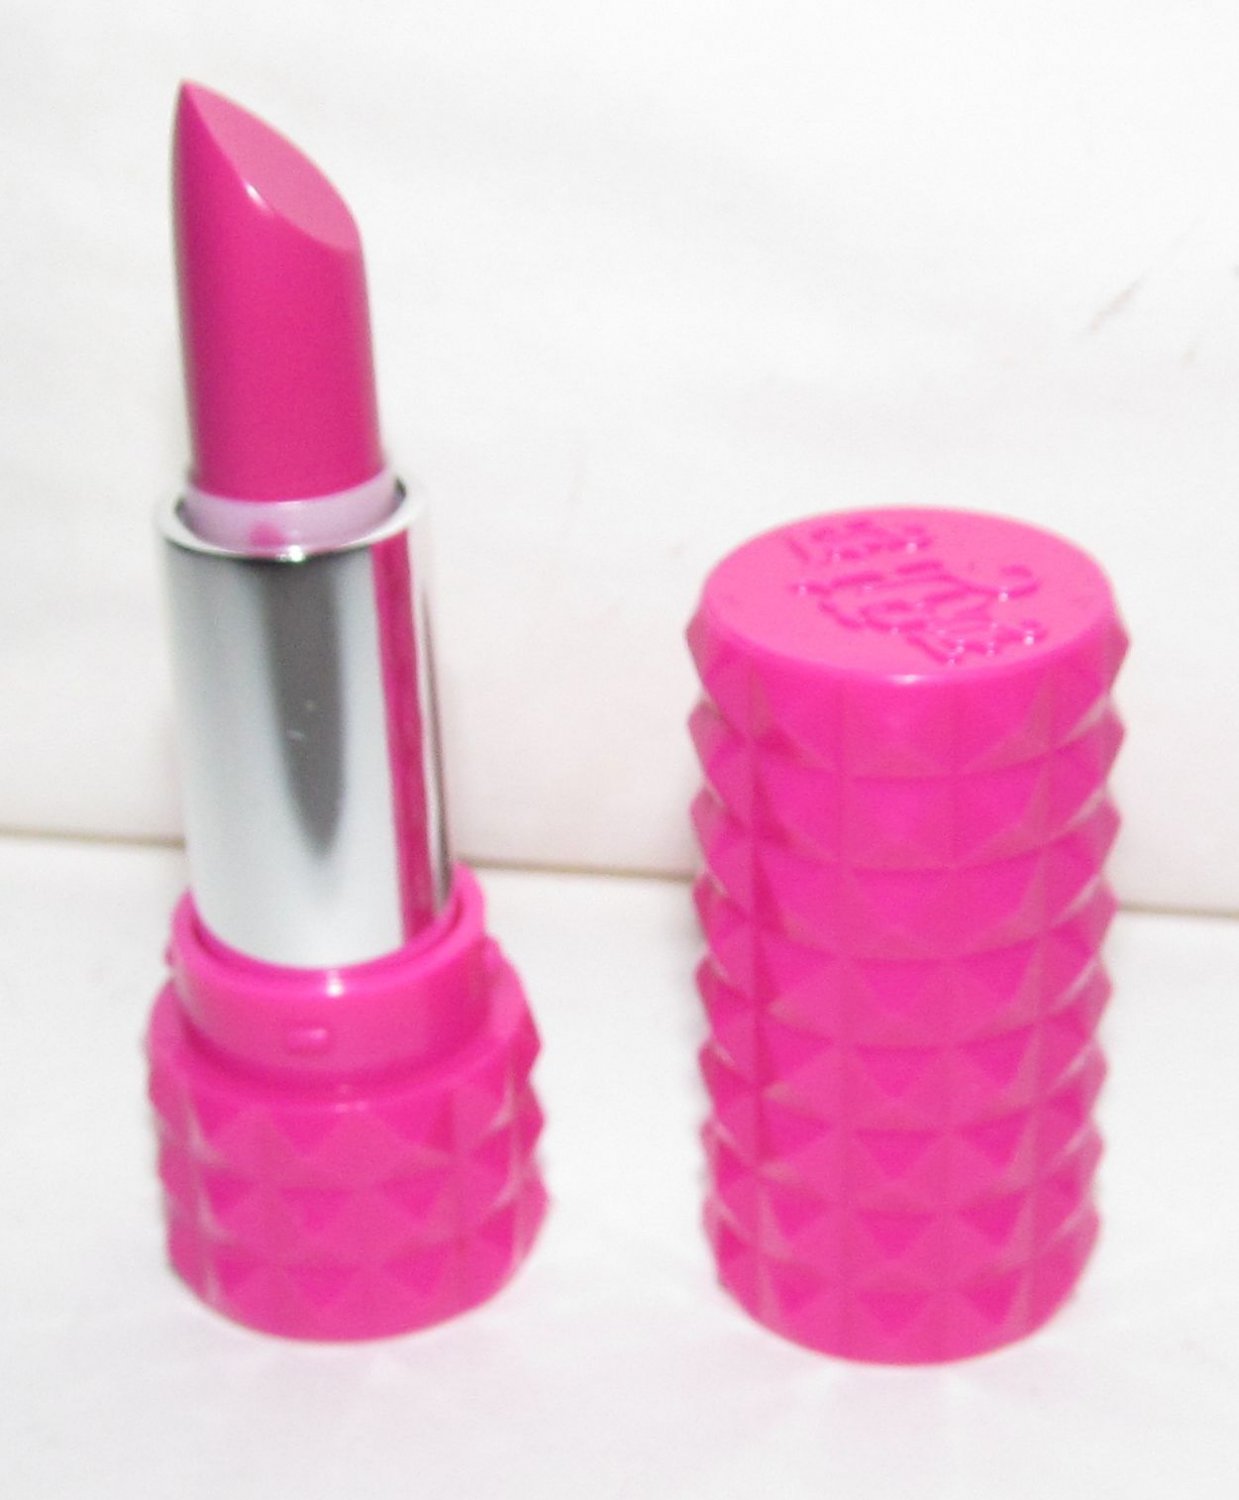 Kat Von D Lipstick - Crush - Mini Studded Lipstick - NEW